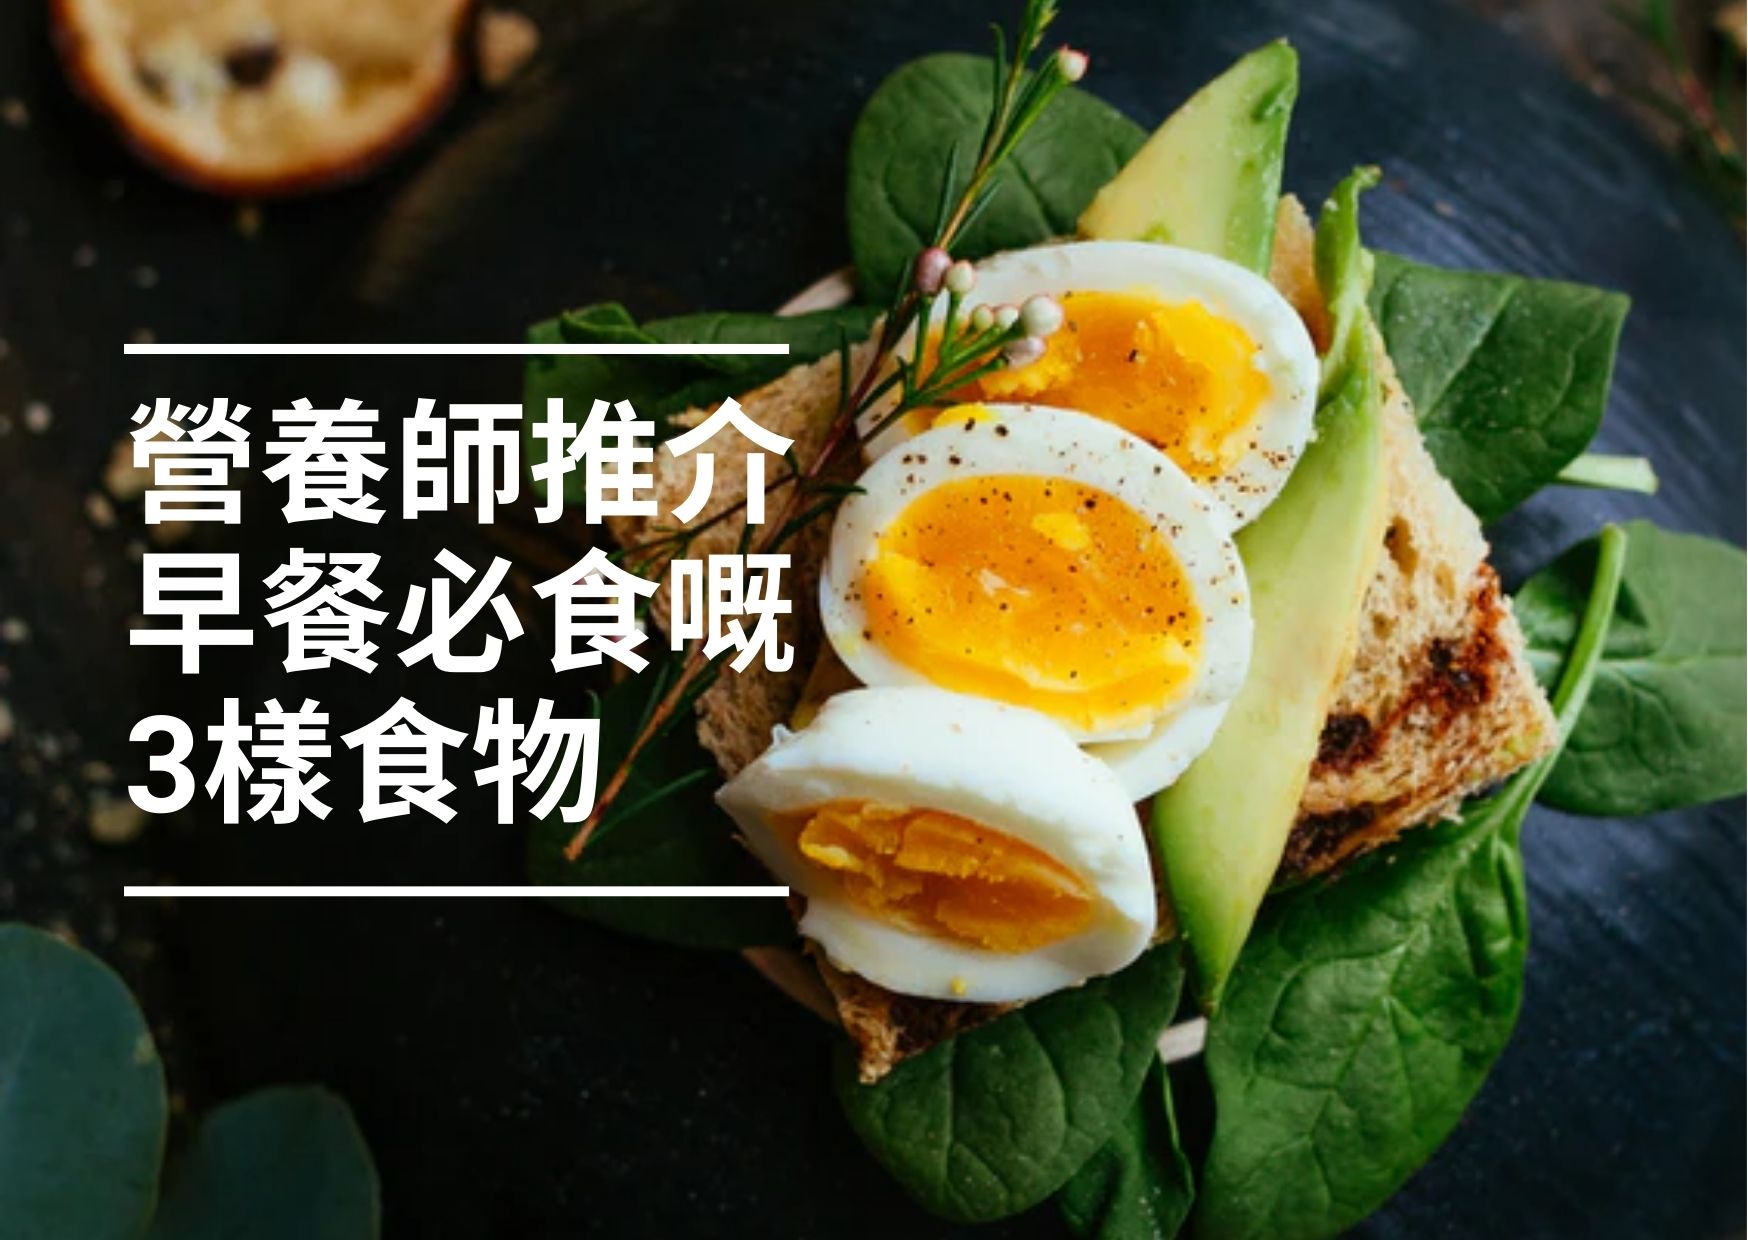 【健康生活】營養師推介早餐必食3樣野